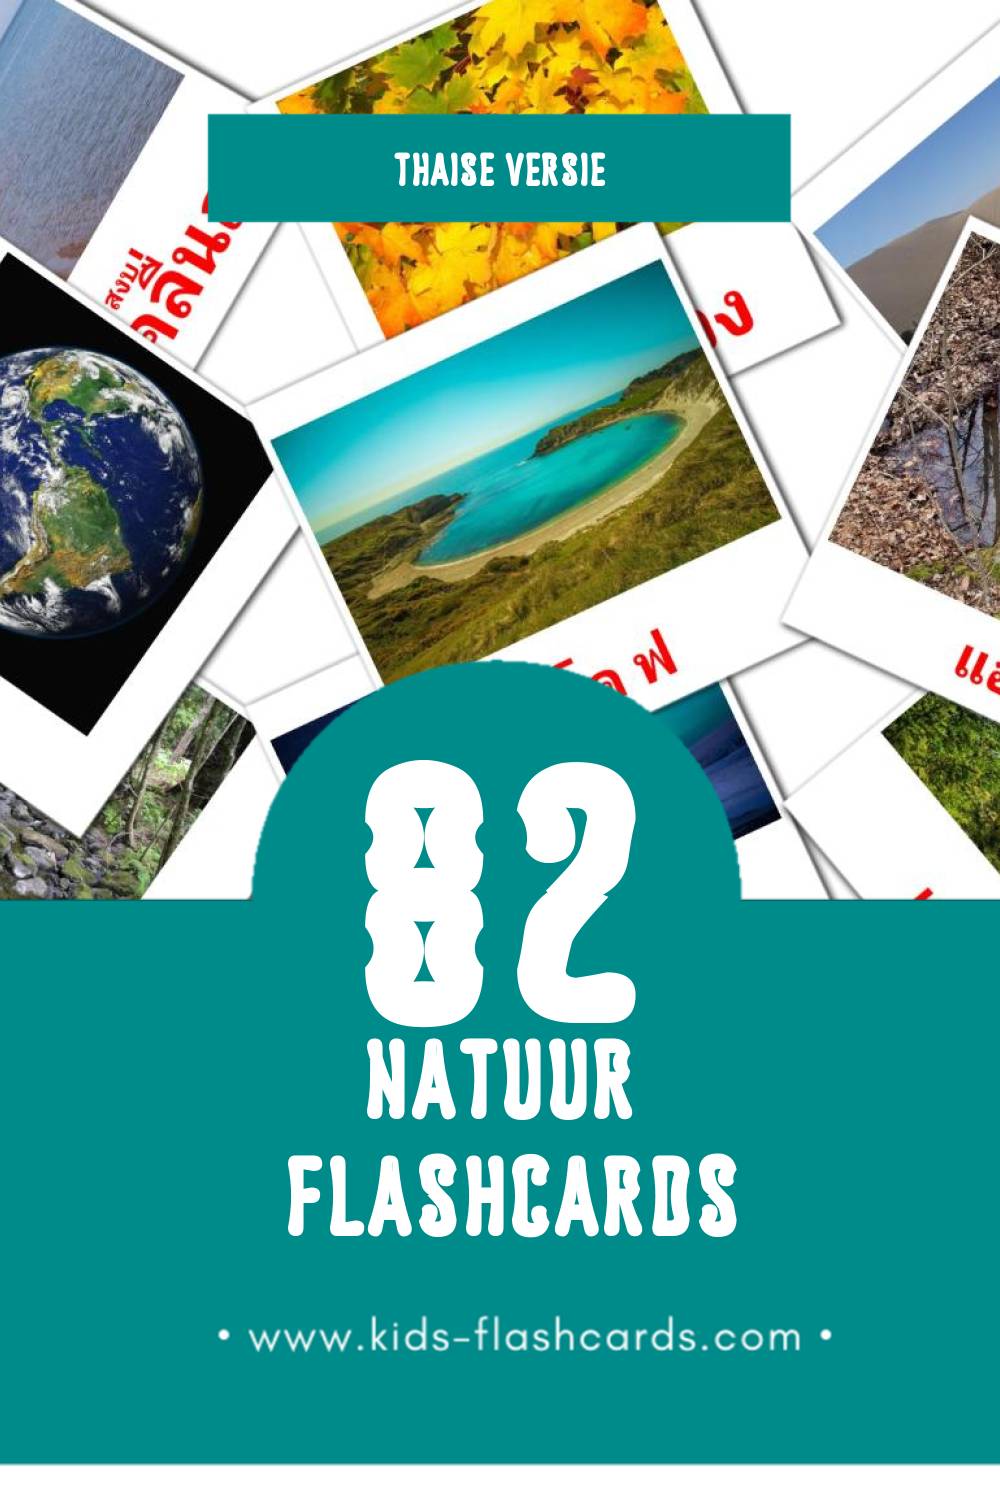 Visuele  ธรรมชาติ Flashcards voor Kleuters (82 kaarten in het Thais)